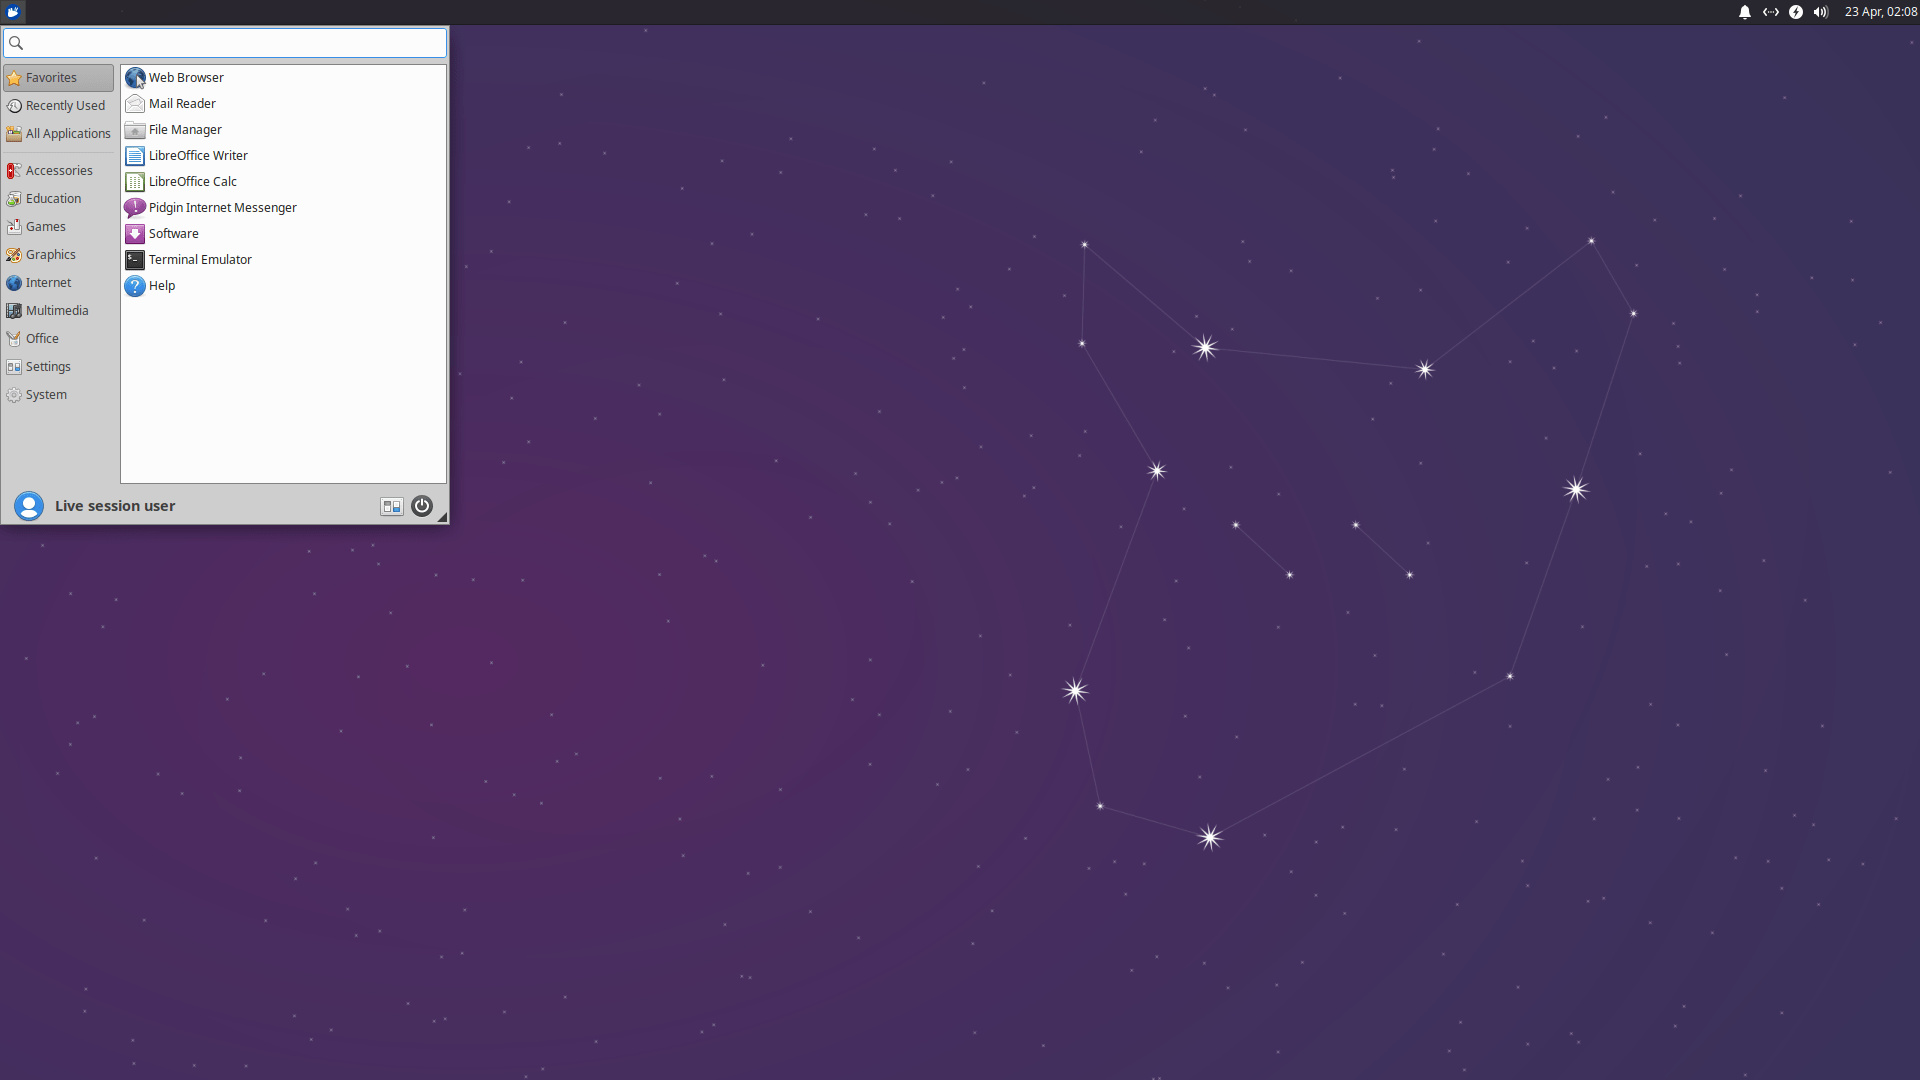 Xubuntu 20.04 LTS